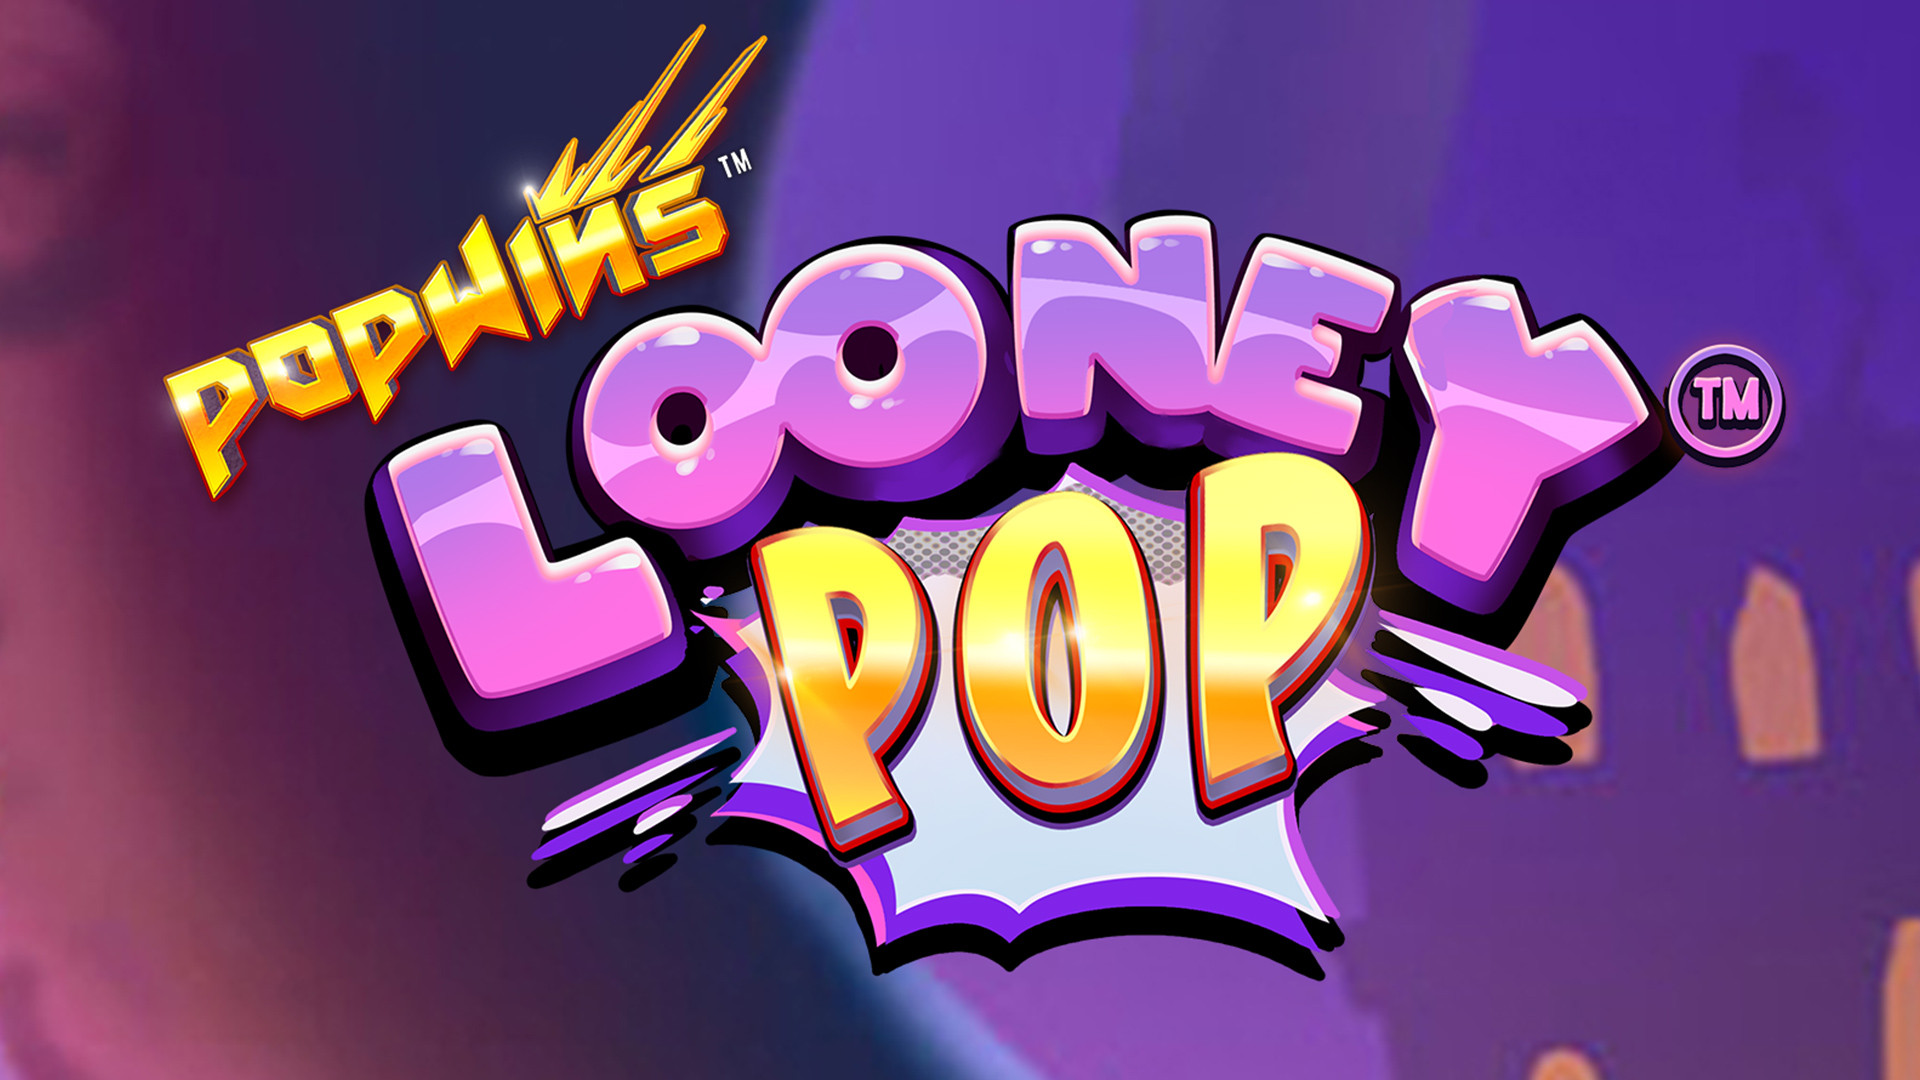 Looney Pop